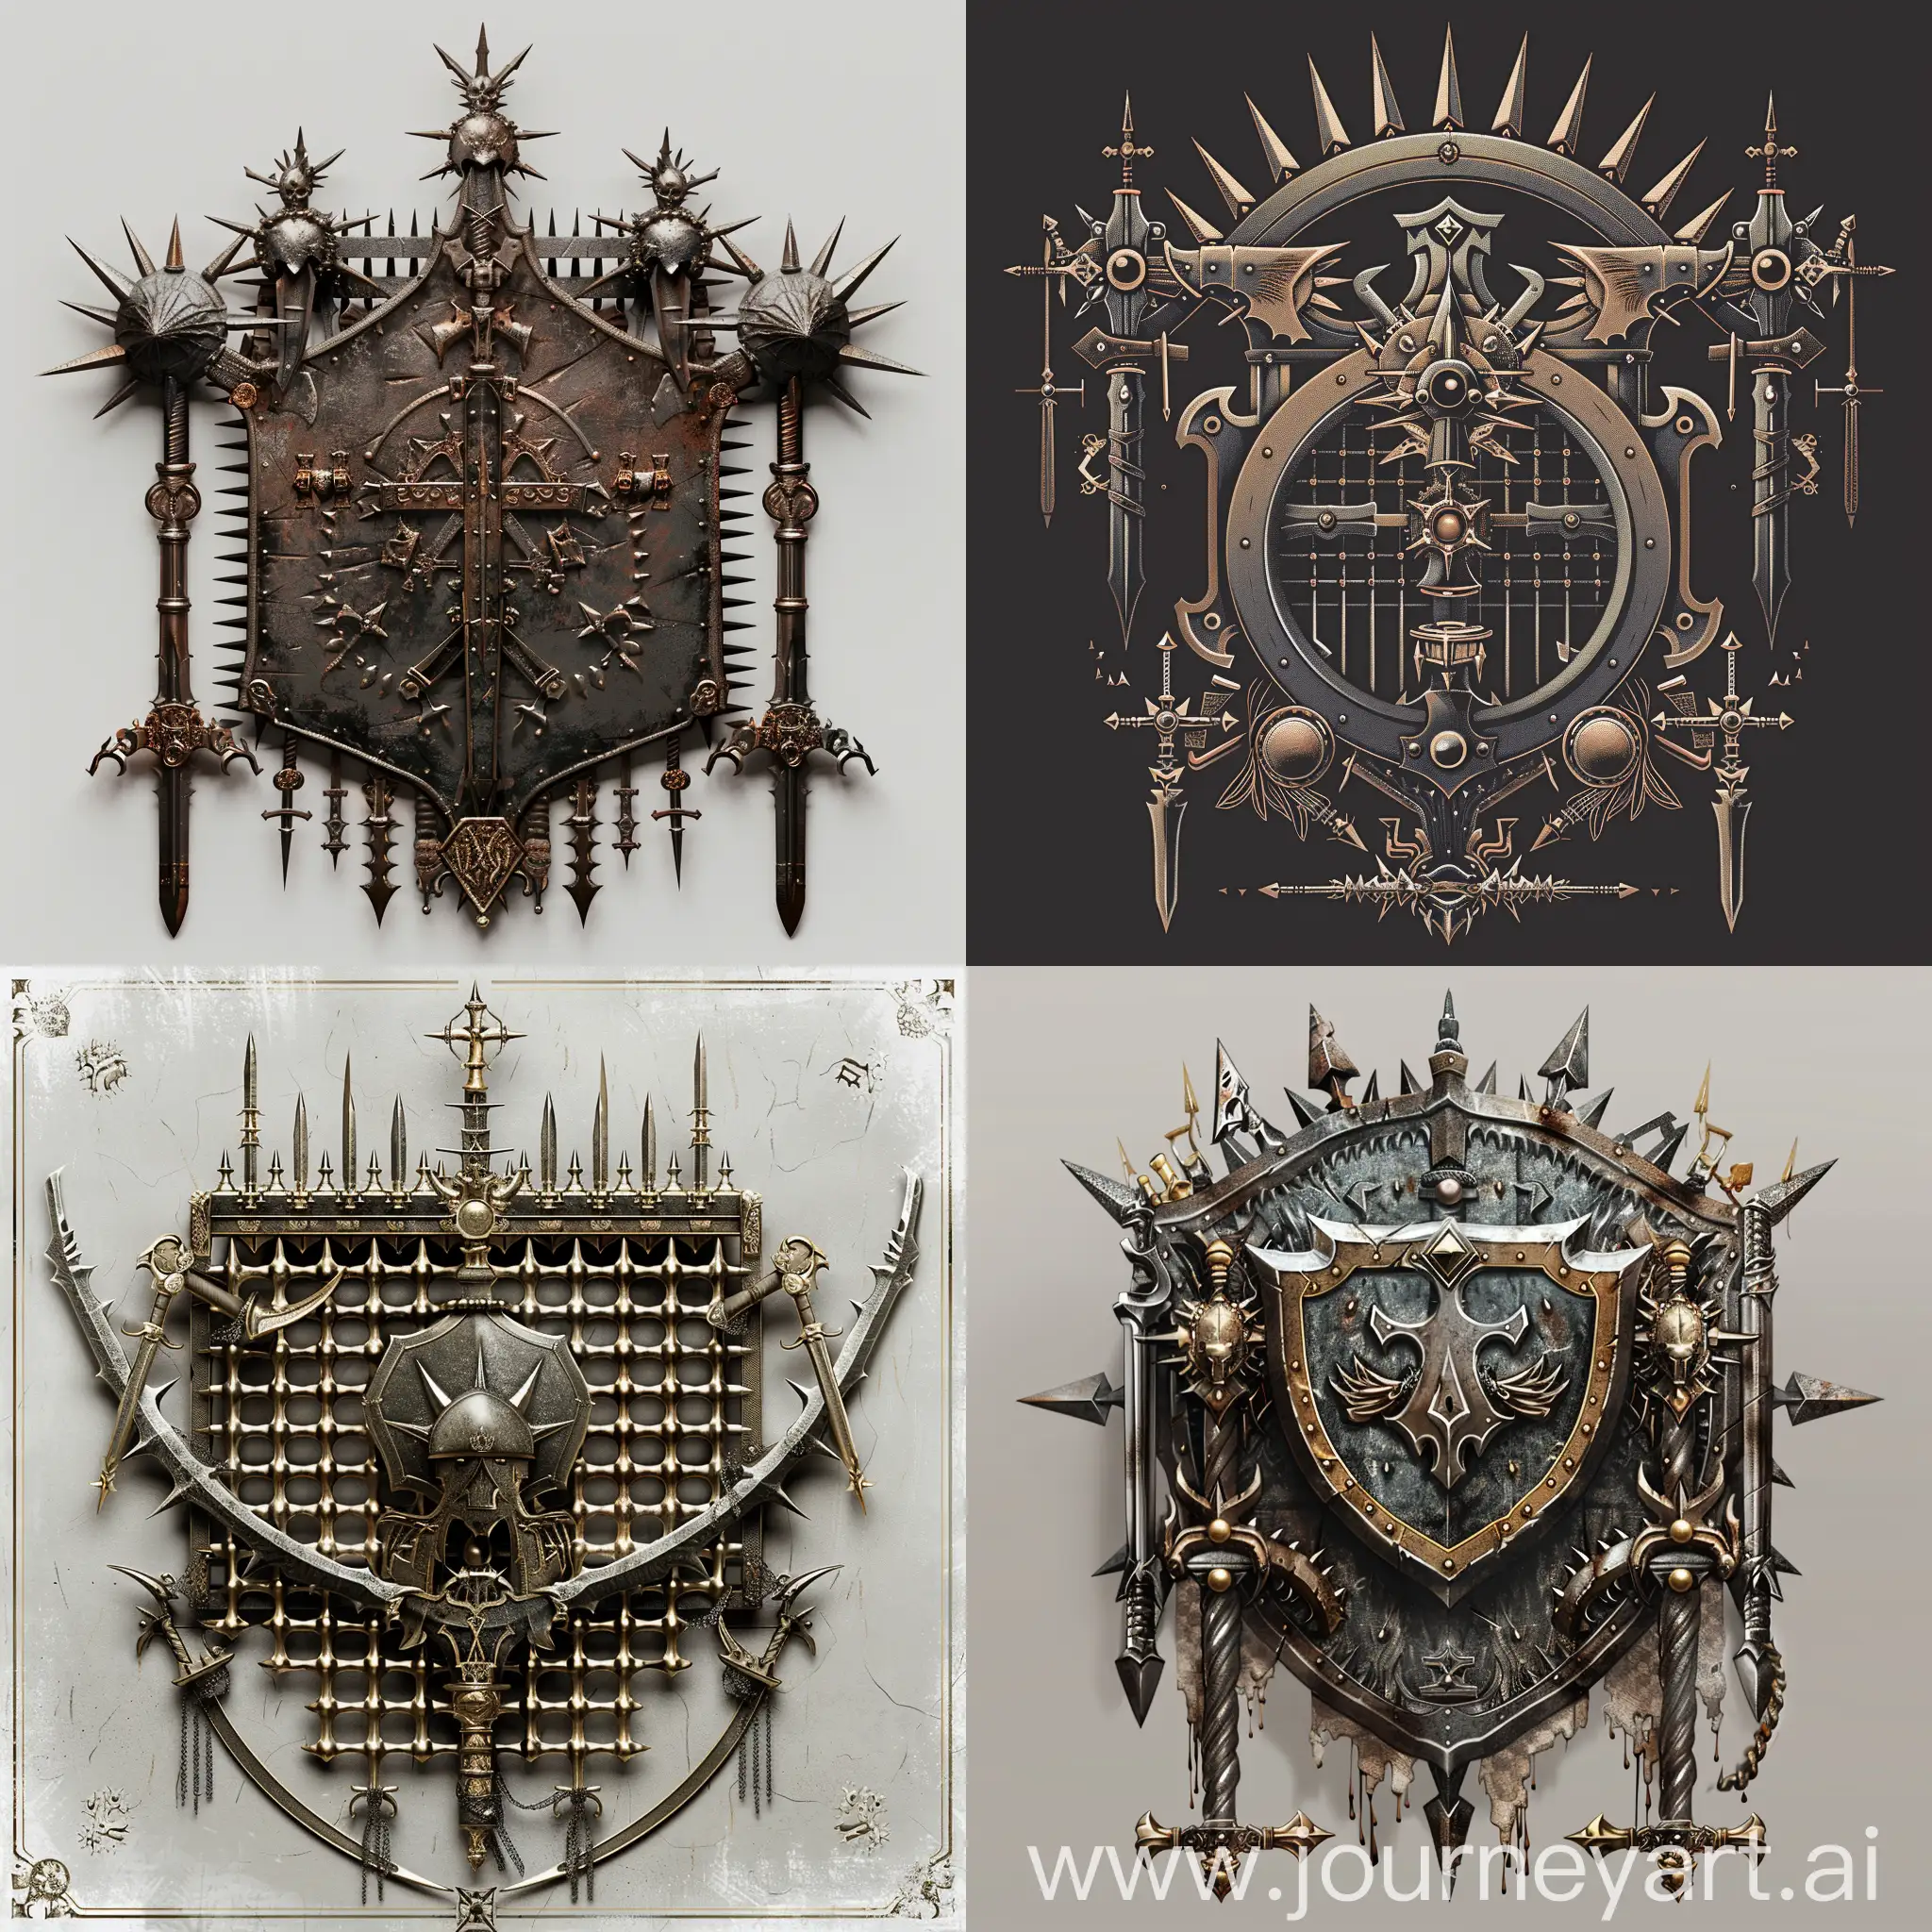 создай герб для фентези-королевства, на котором изображена шипастая металлическая решетка и оружие